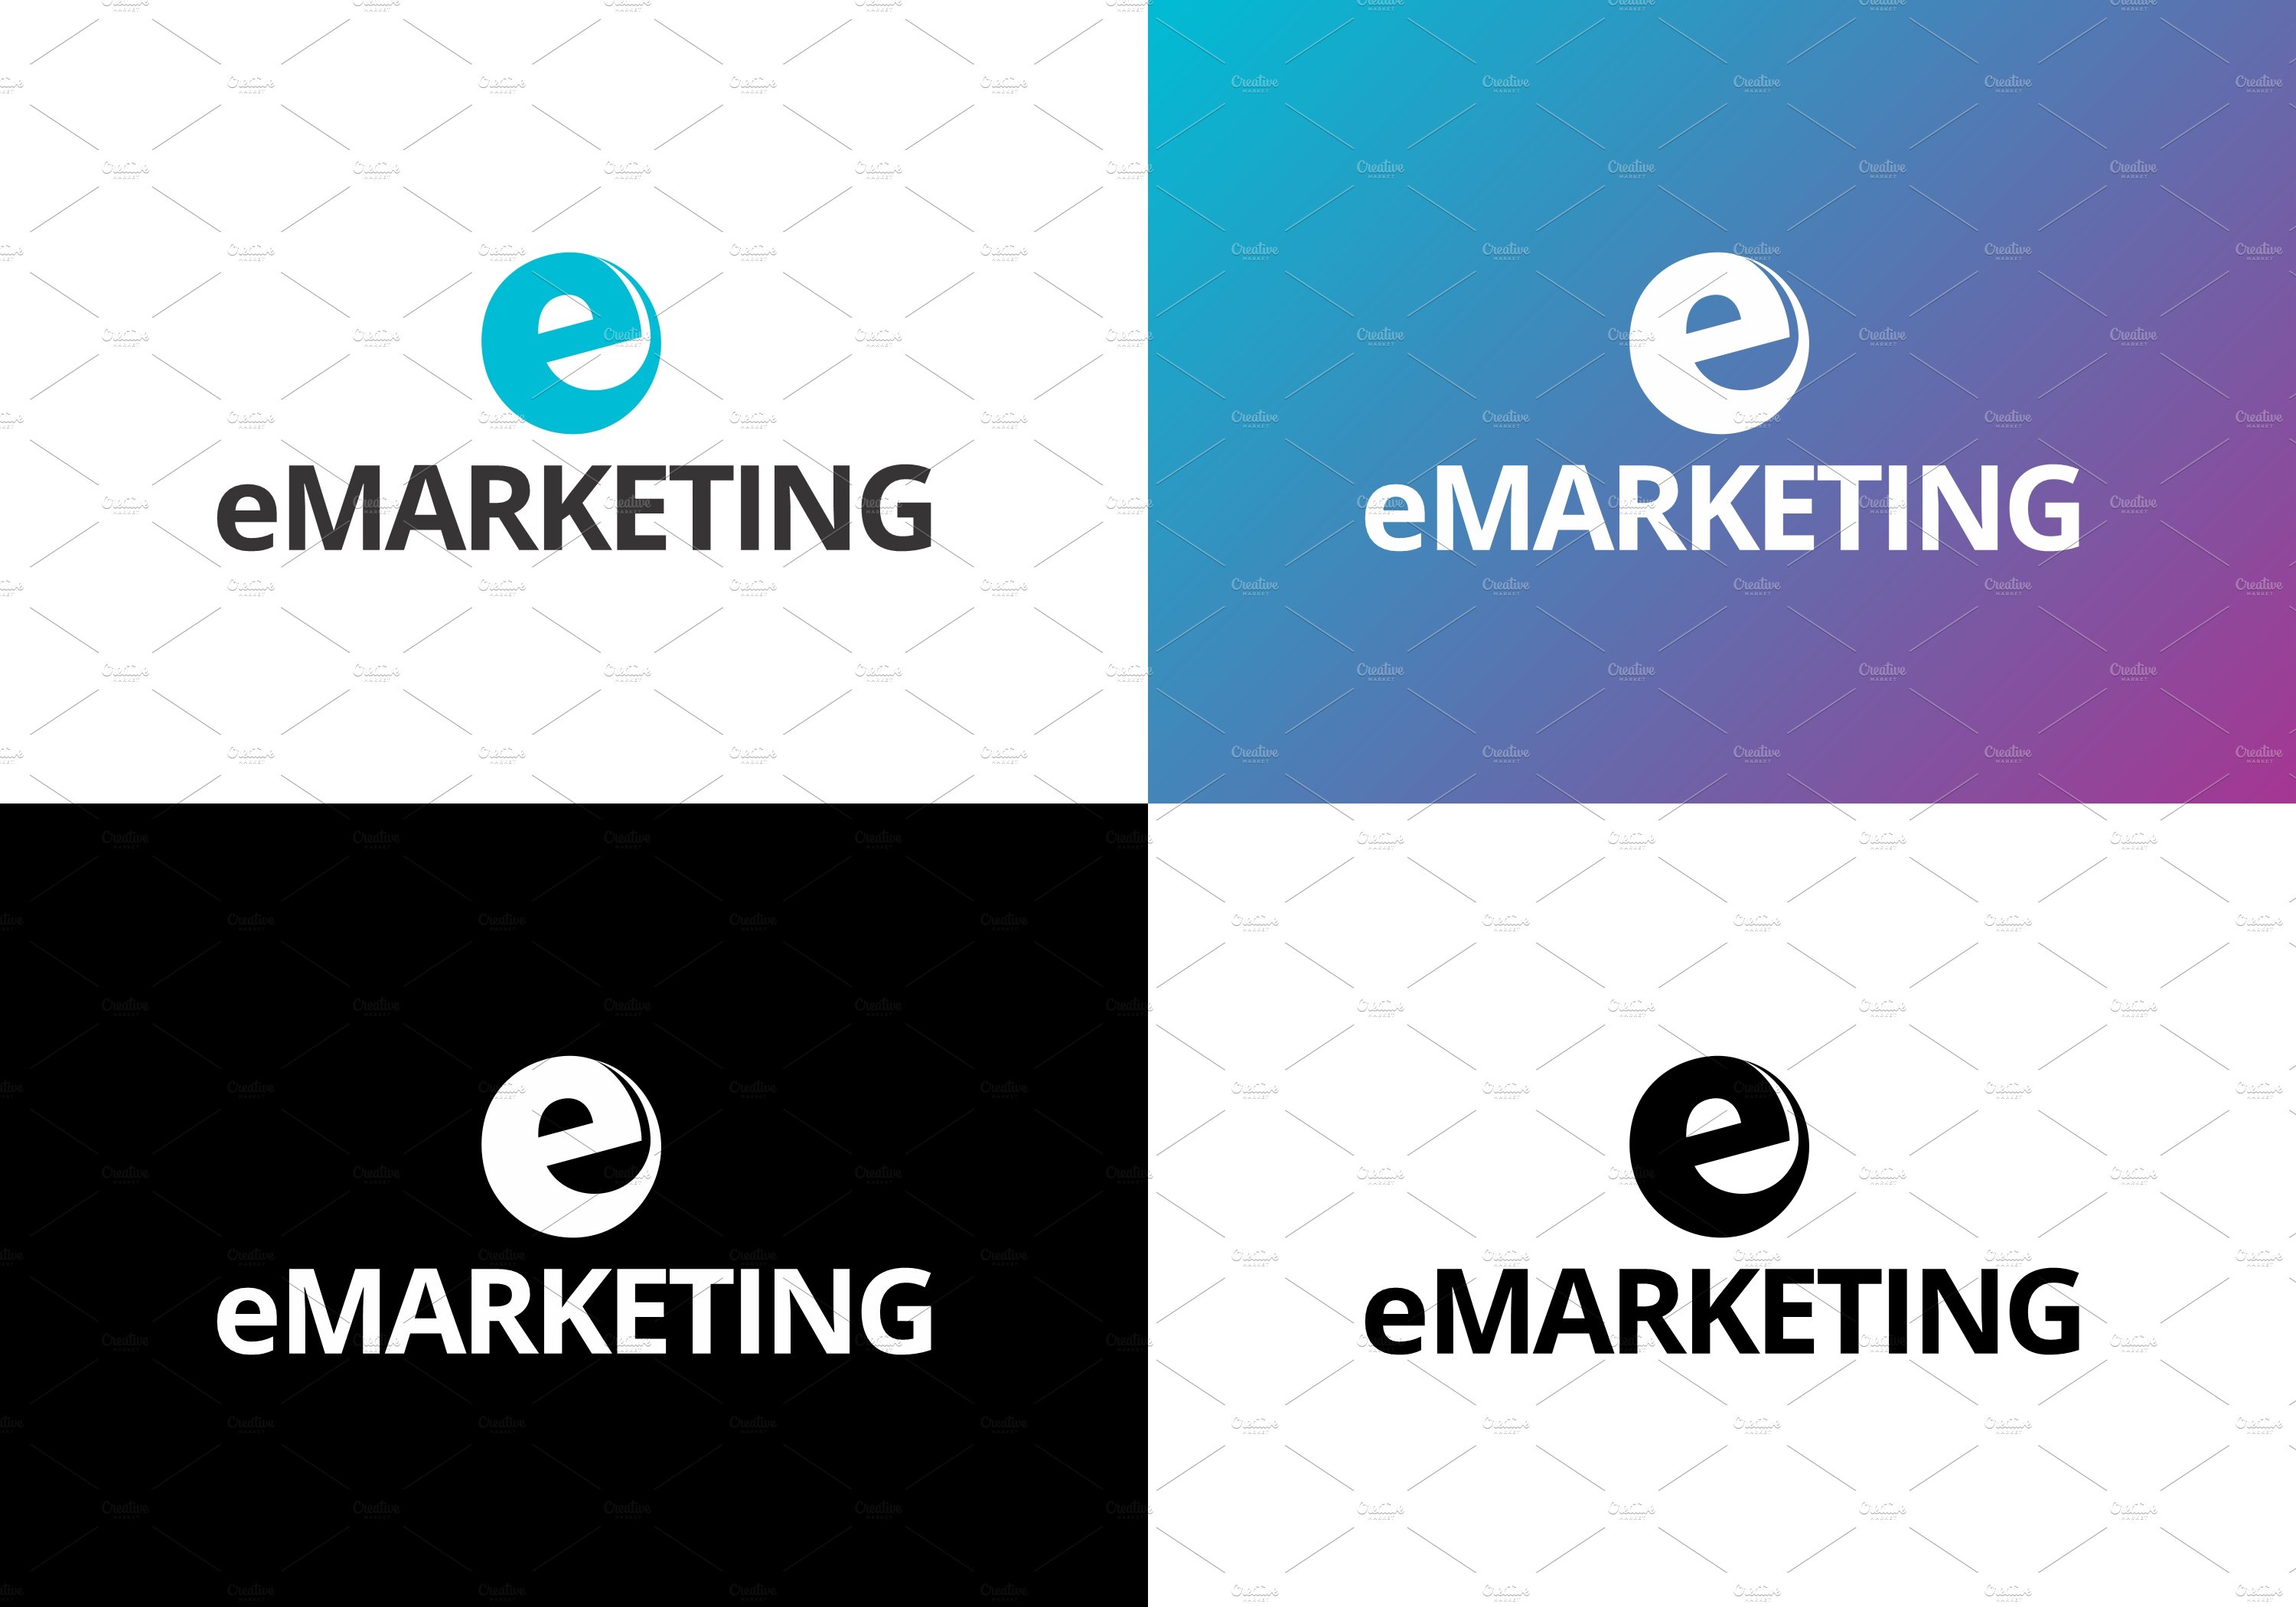 E Marketing Logo Design Template preview image.